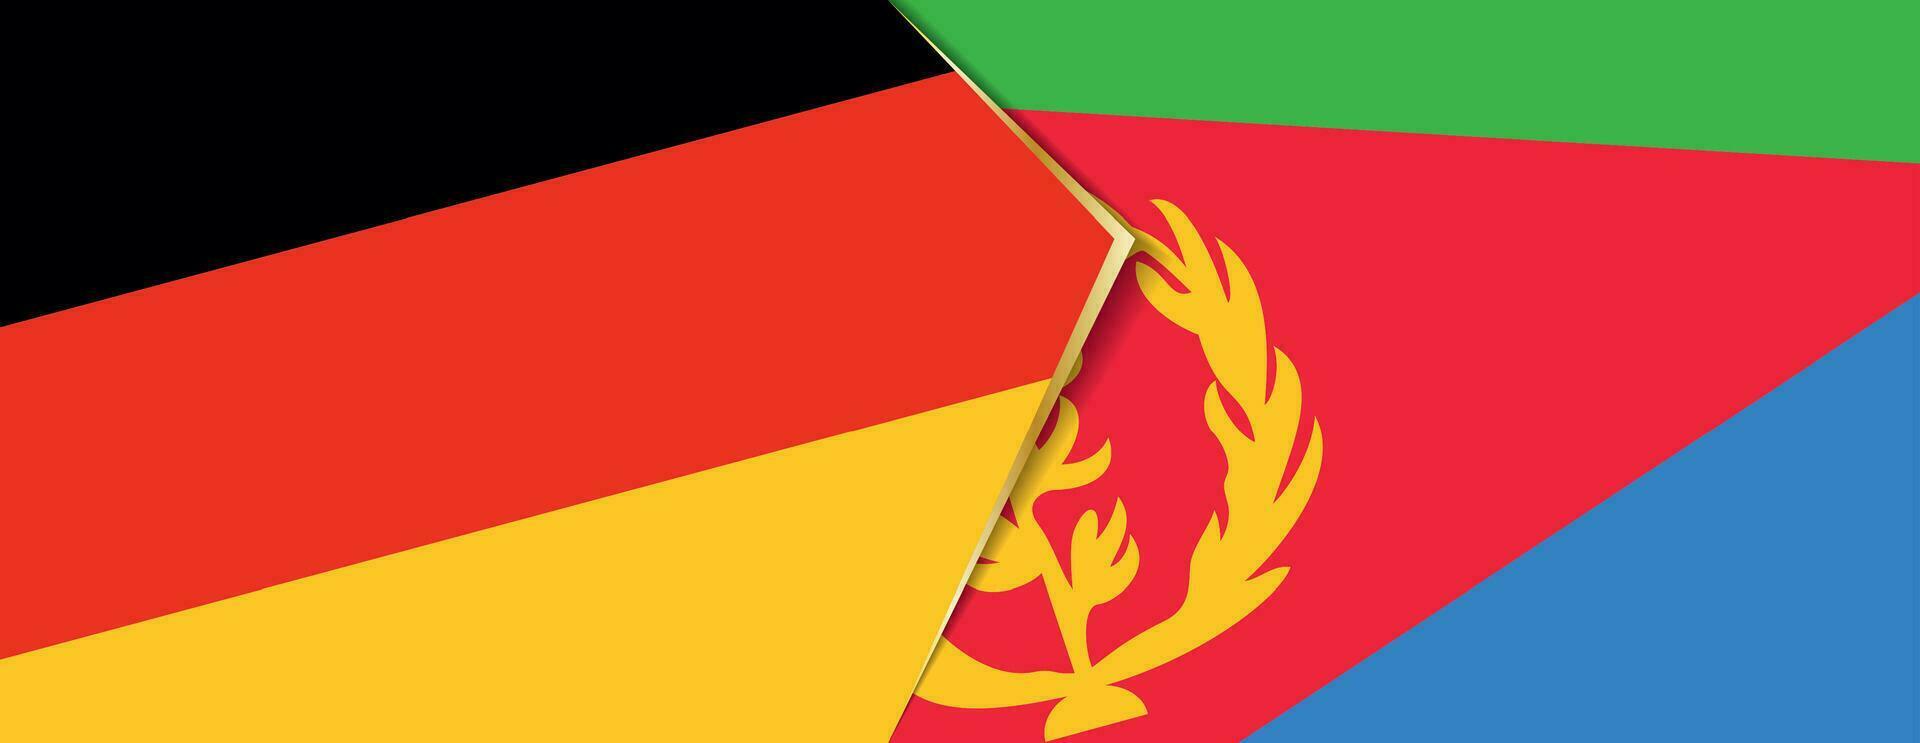 Deutschland und eritrea Flaggen, zwei Vektor Flaggen.